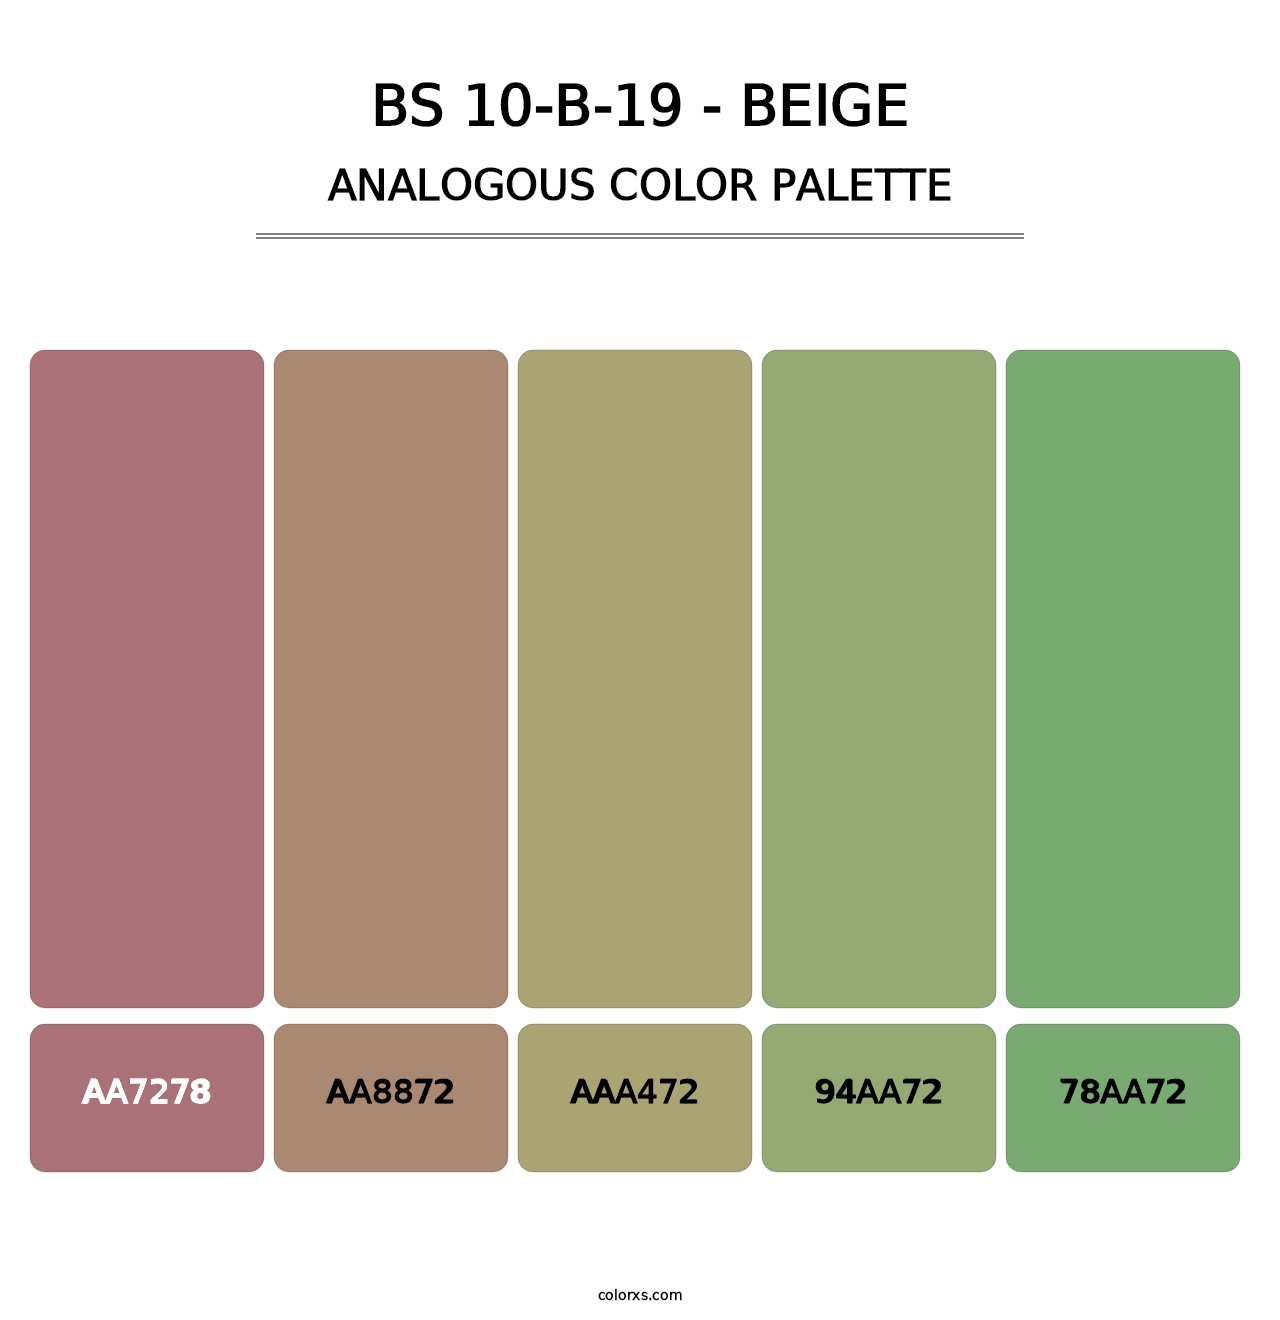 BS 10-B-19 - Beige - Analogous Color Palette